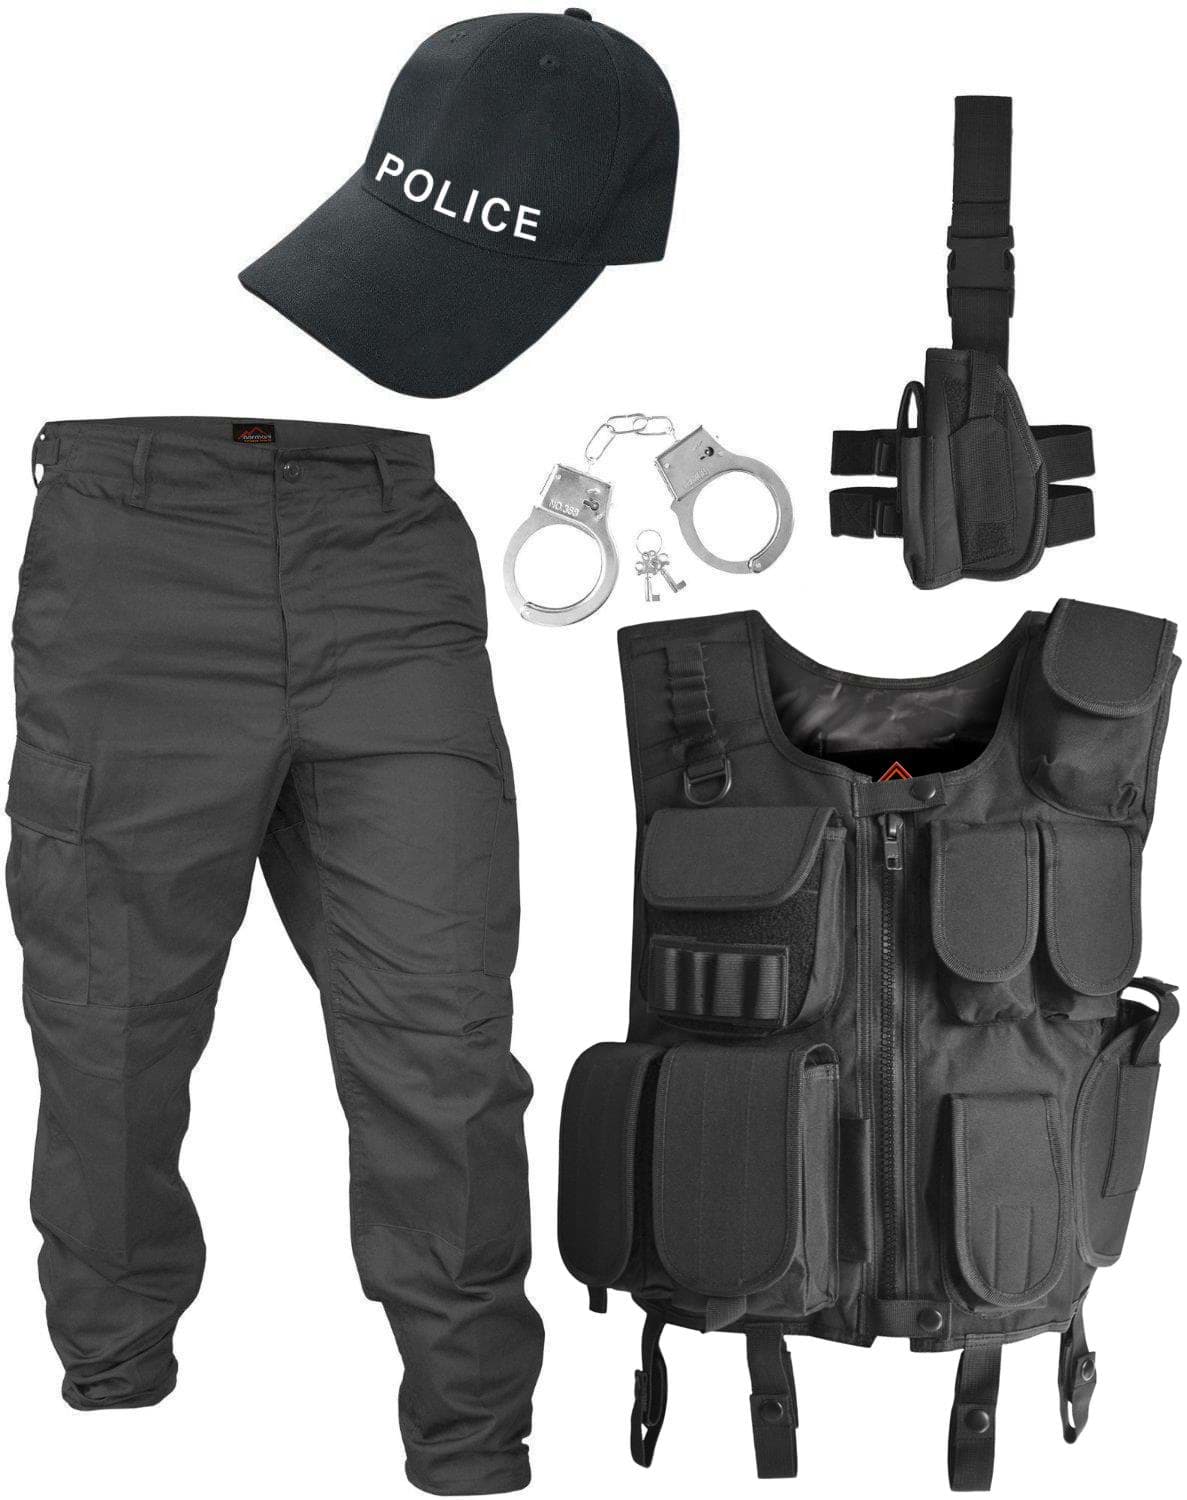 Bild von POLICE Kostüm bestehend aus Weste, Patch, Hose, Holster, Cap und Handschellen Schwarz